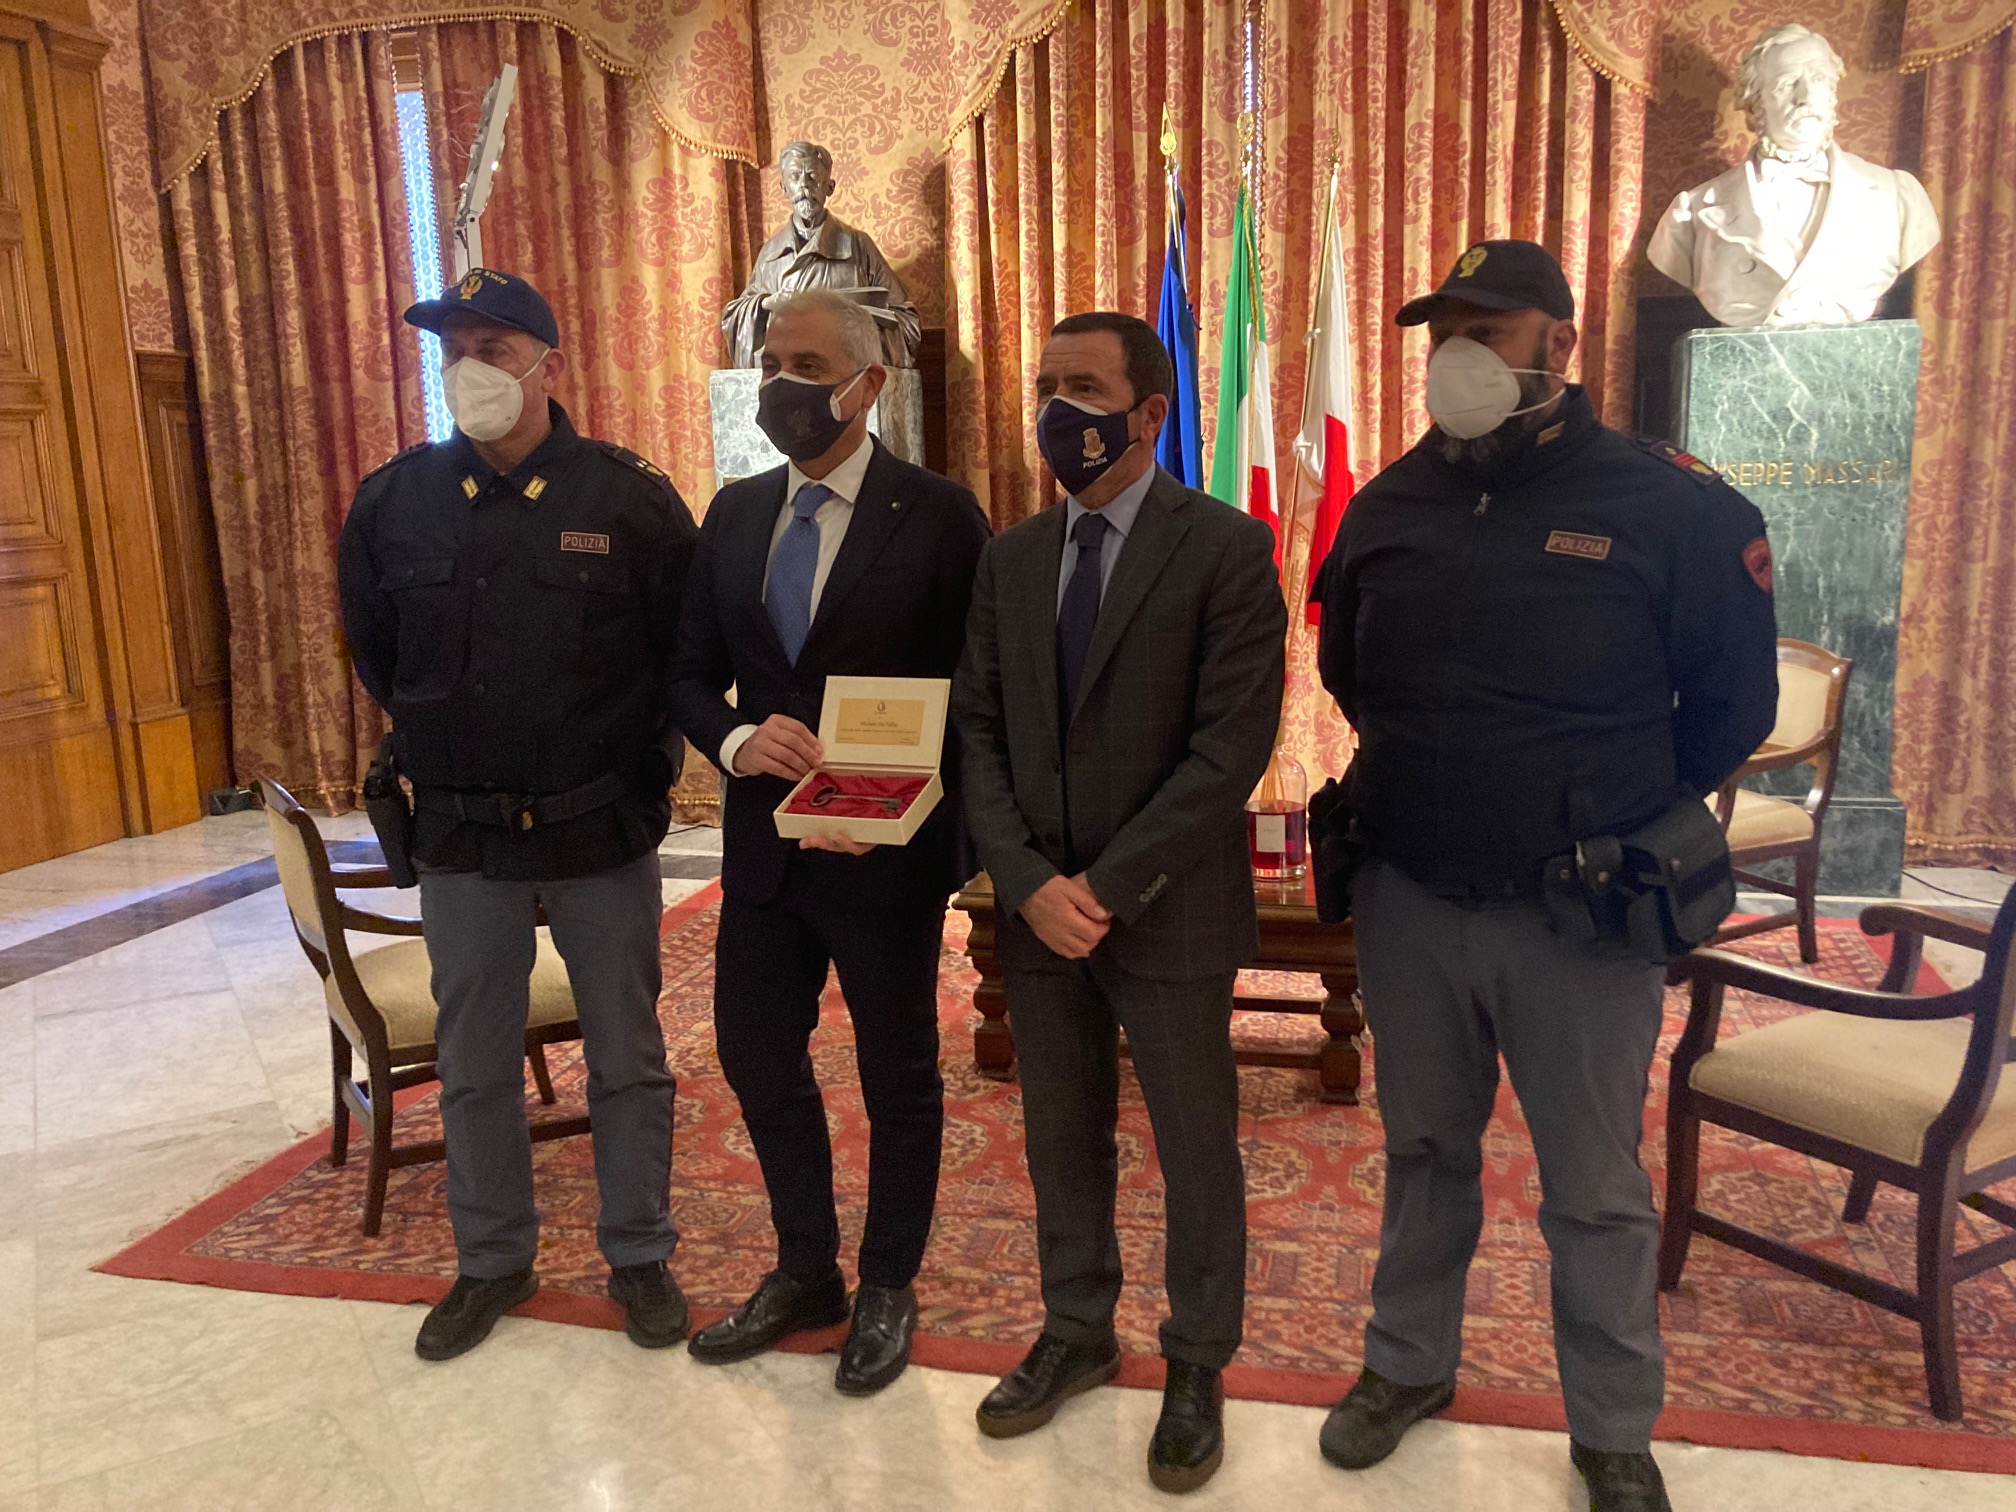 Il Questore di Bari, Dirigente Generale Dr. Giuseppe BISOGNO, si congratula con il Dr. Michele DE TULLIO ex Dirigente della Digos per aver ricevuto le chiavi della città